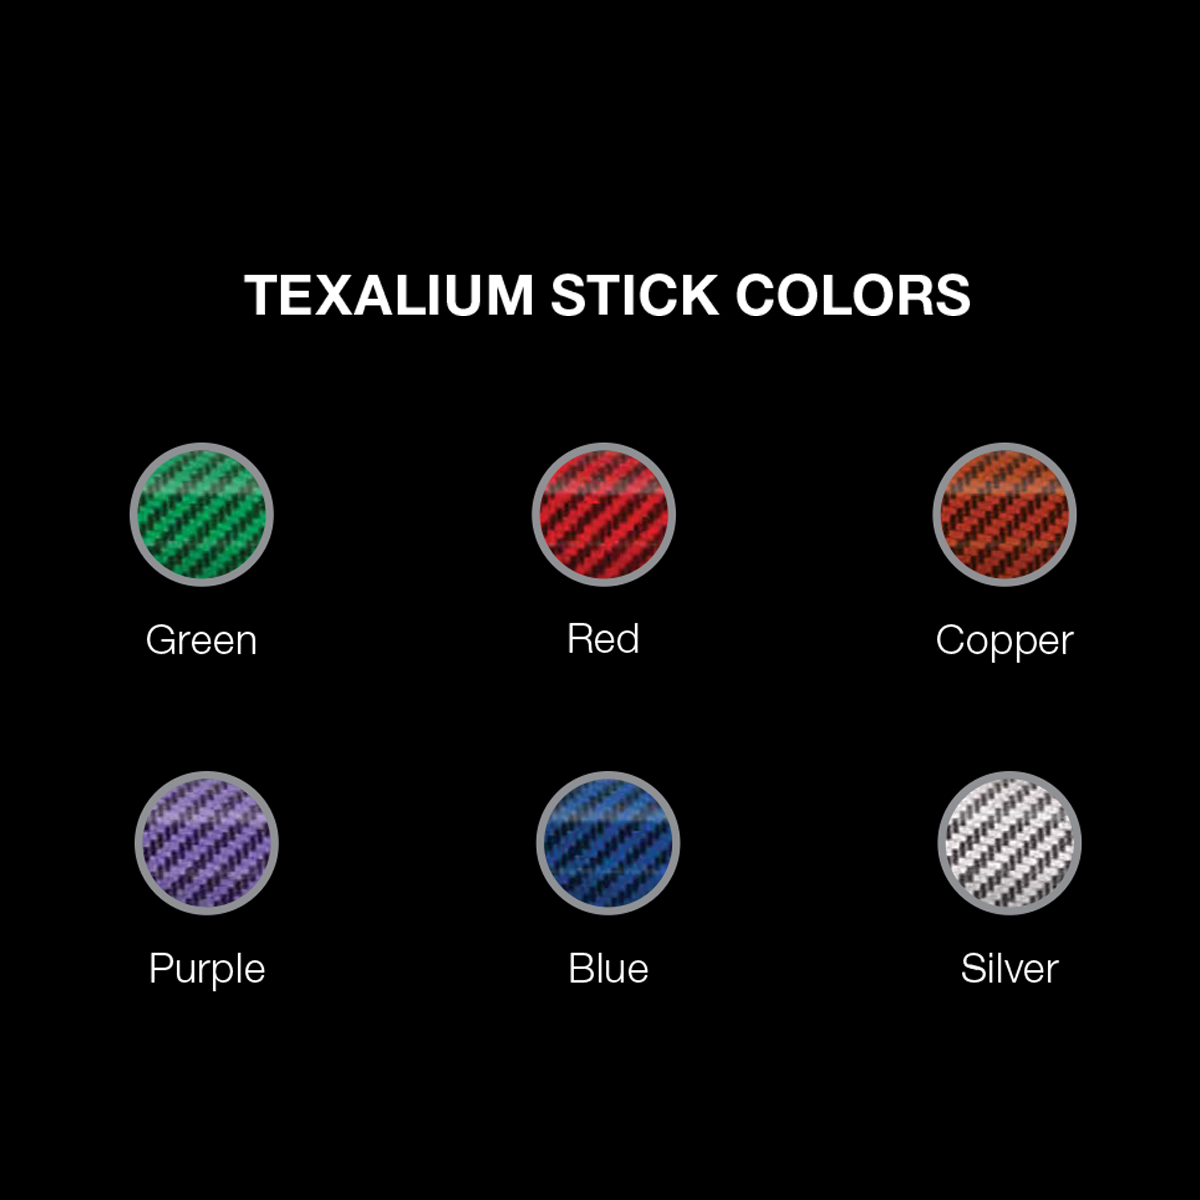 Texalium Stick Colors